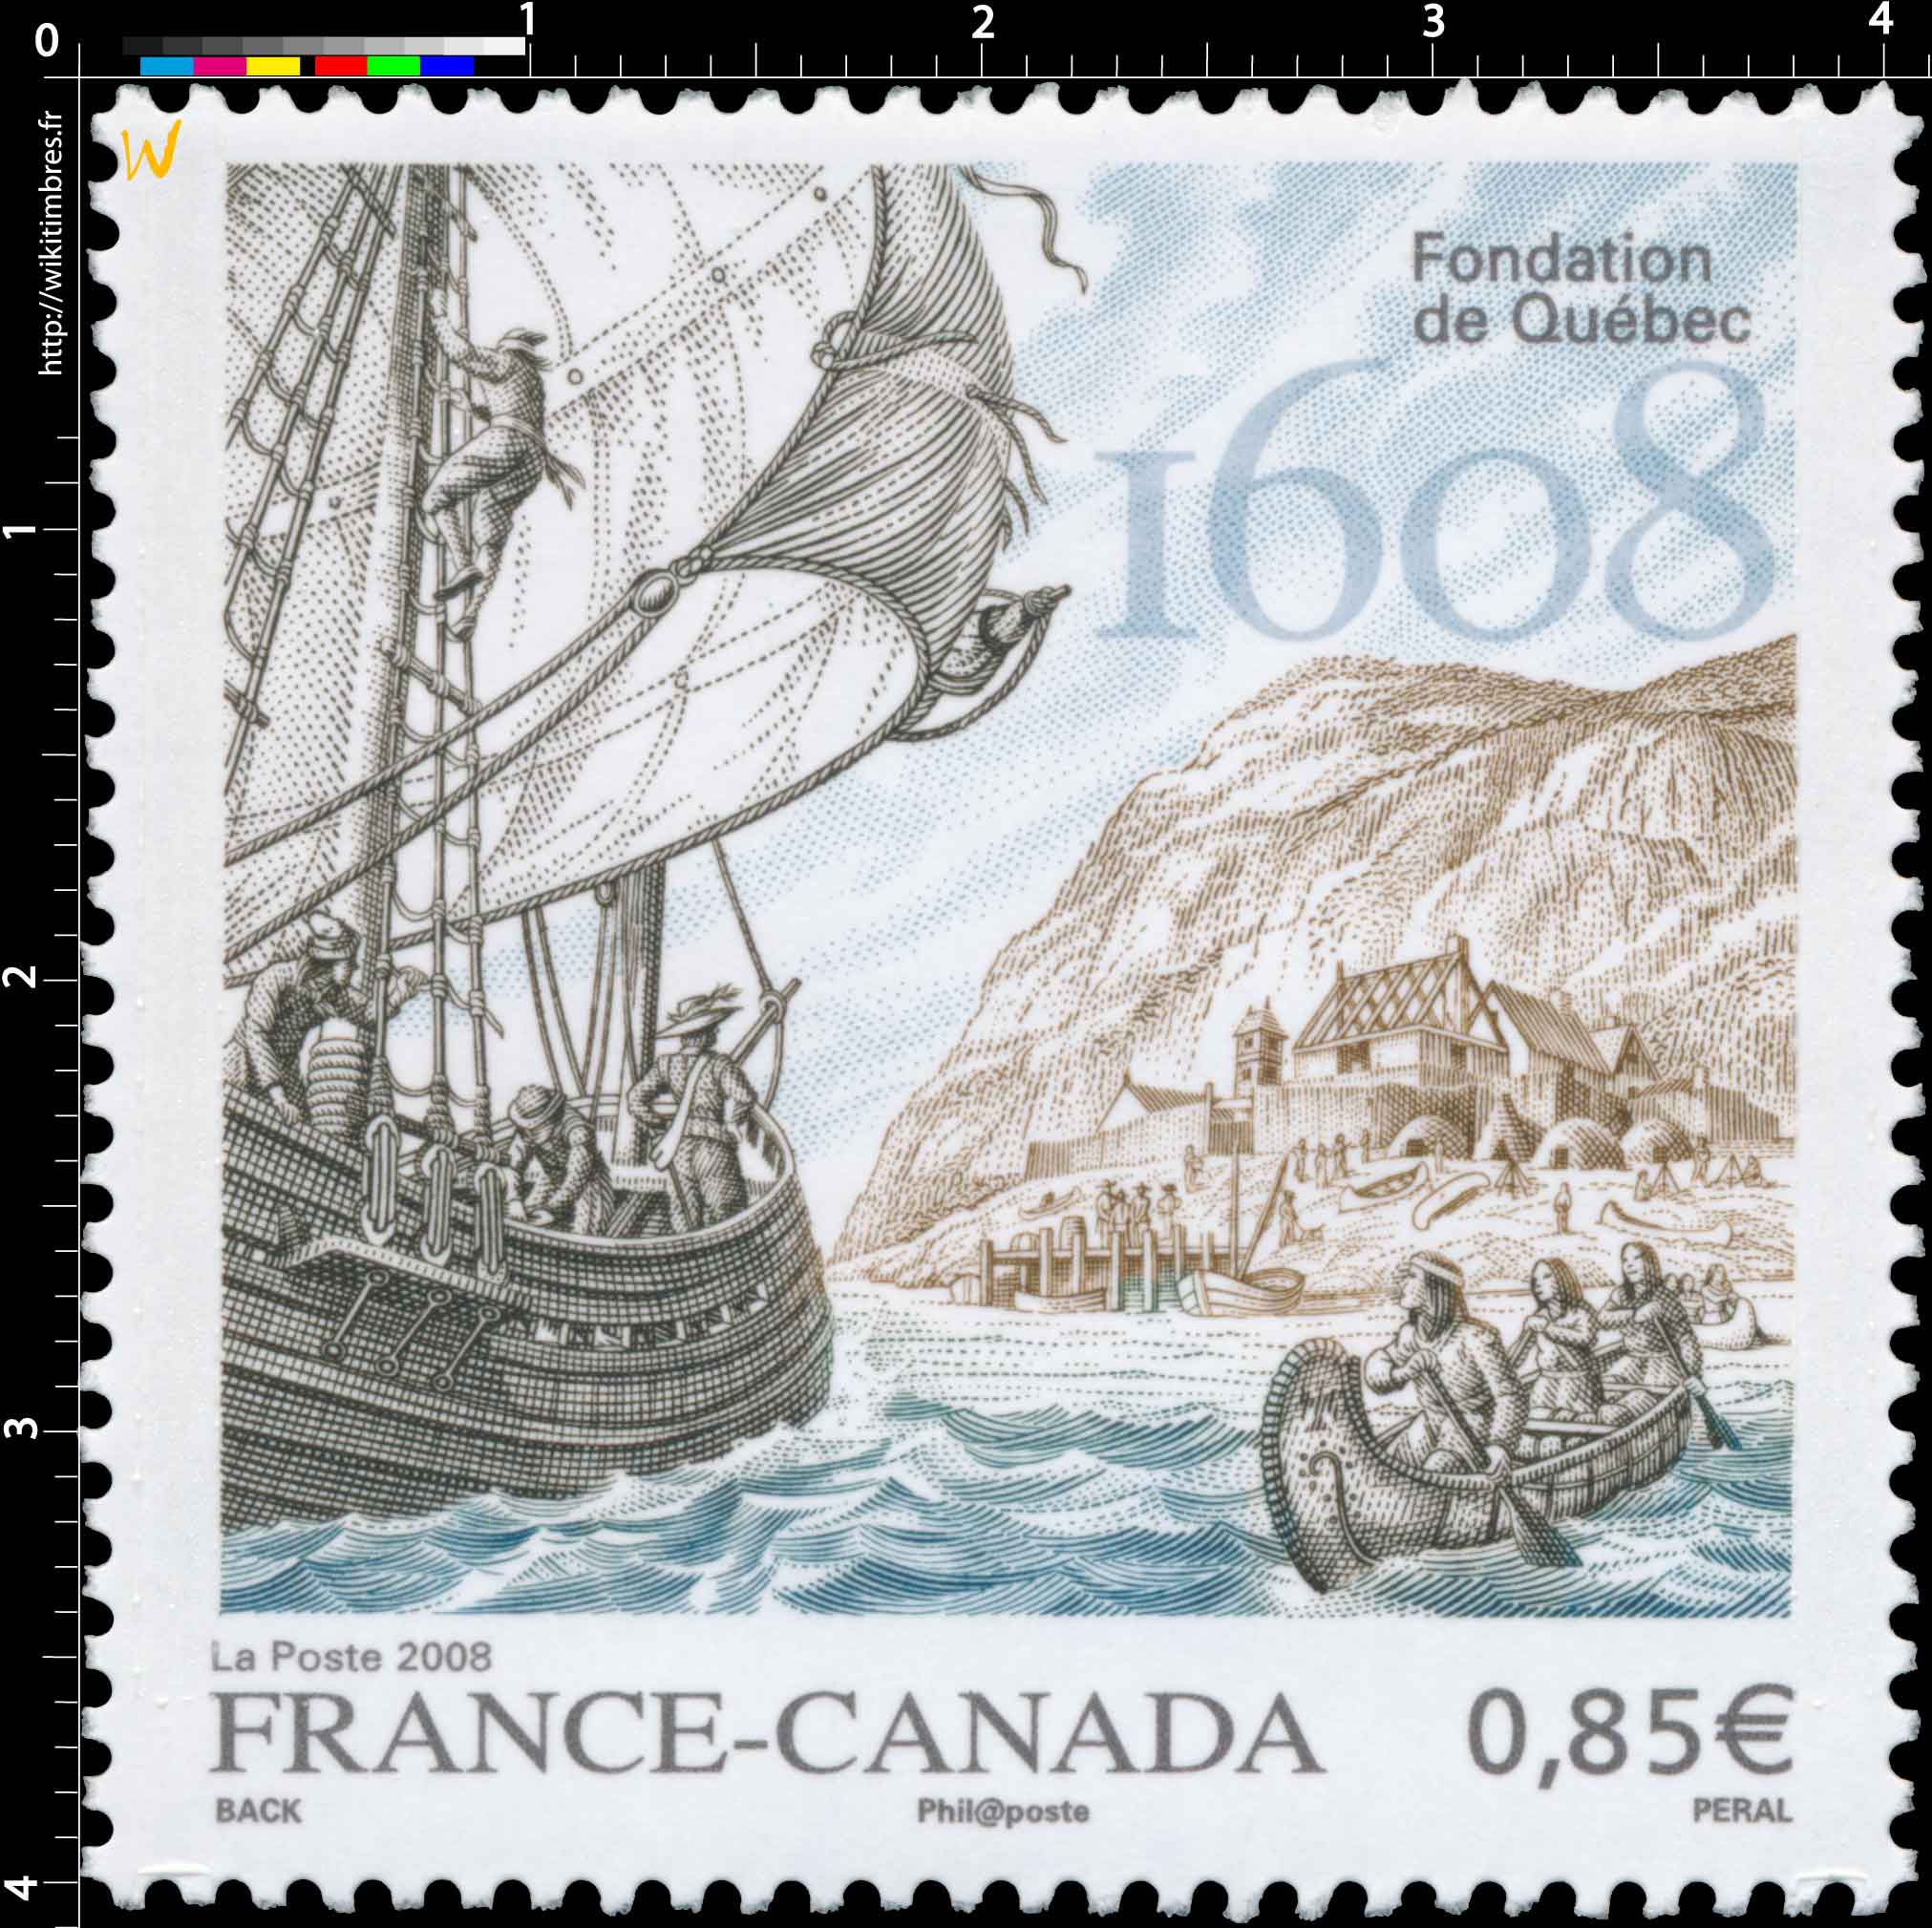 2008 Fondation de Québec 1608 FRANCE-CANADA